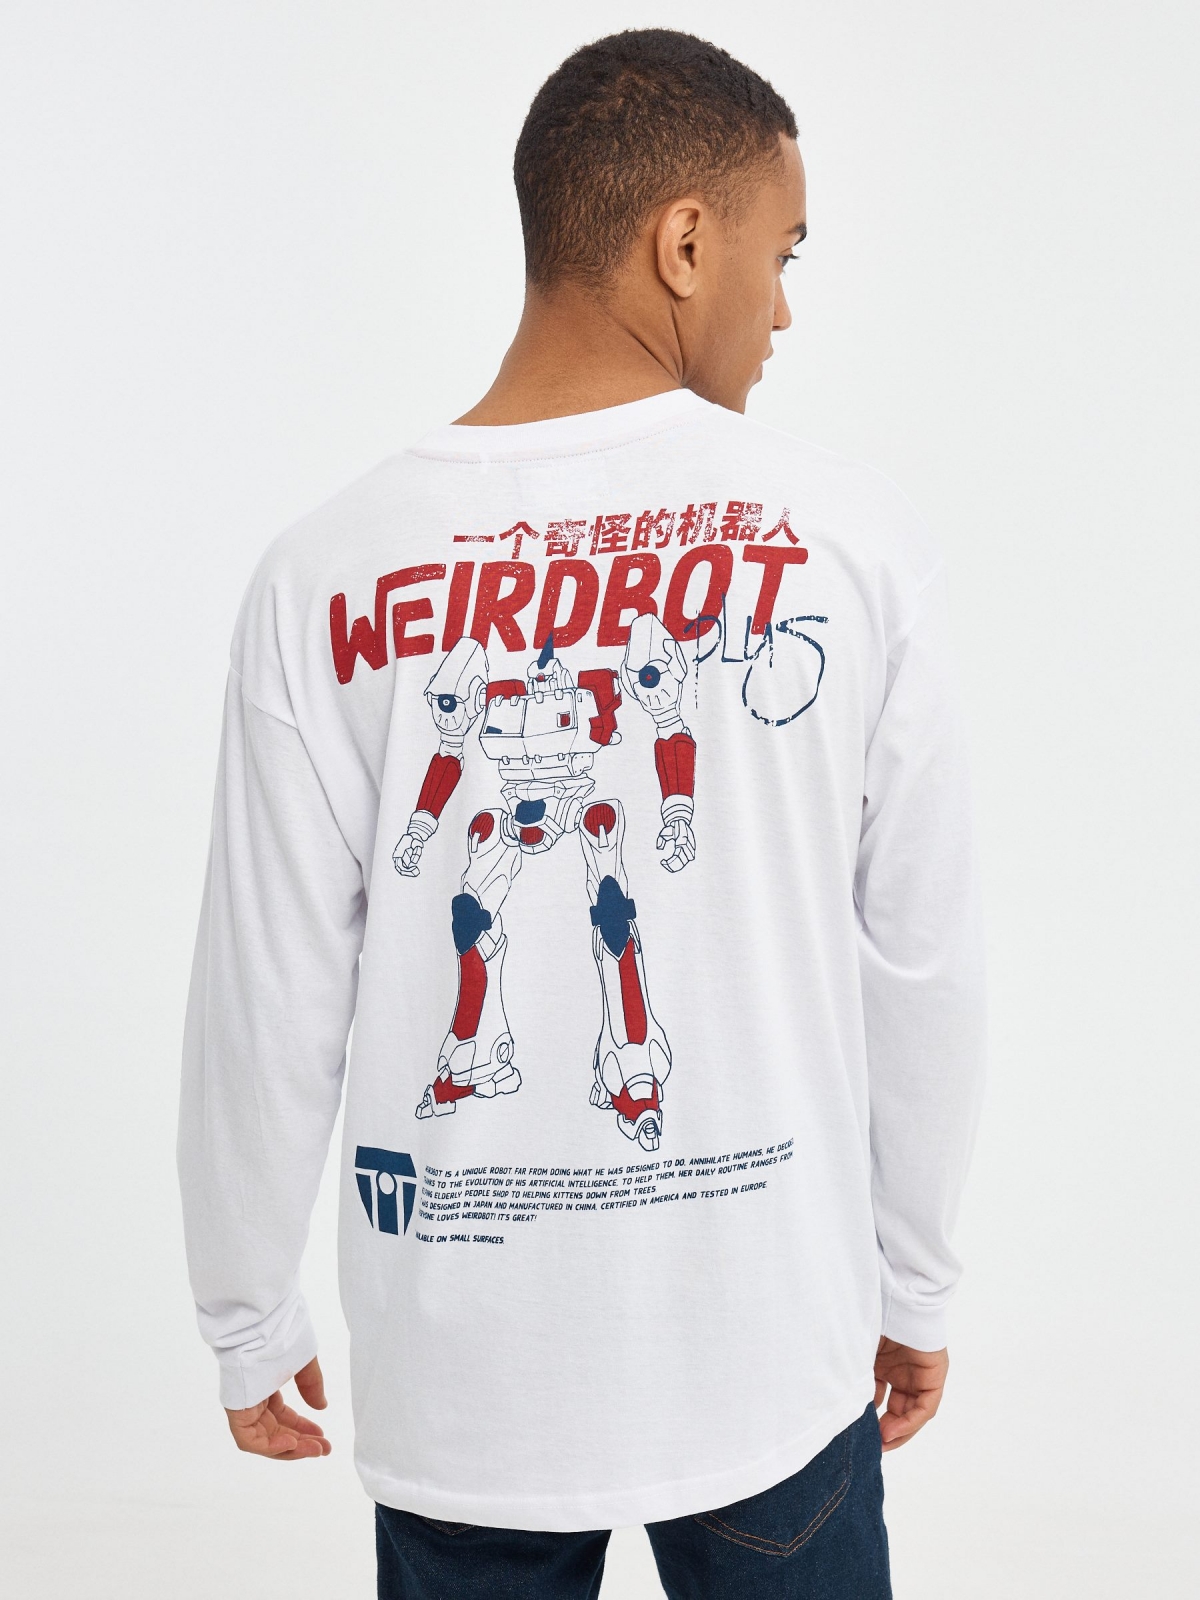 Camiseta The Weird Robot blanco vista media trasera